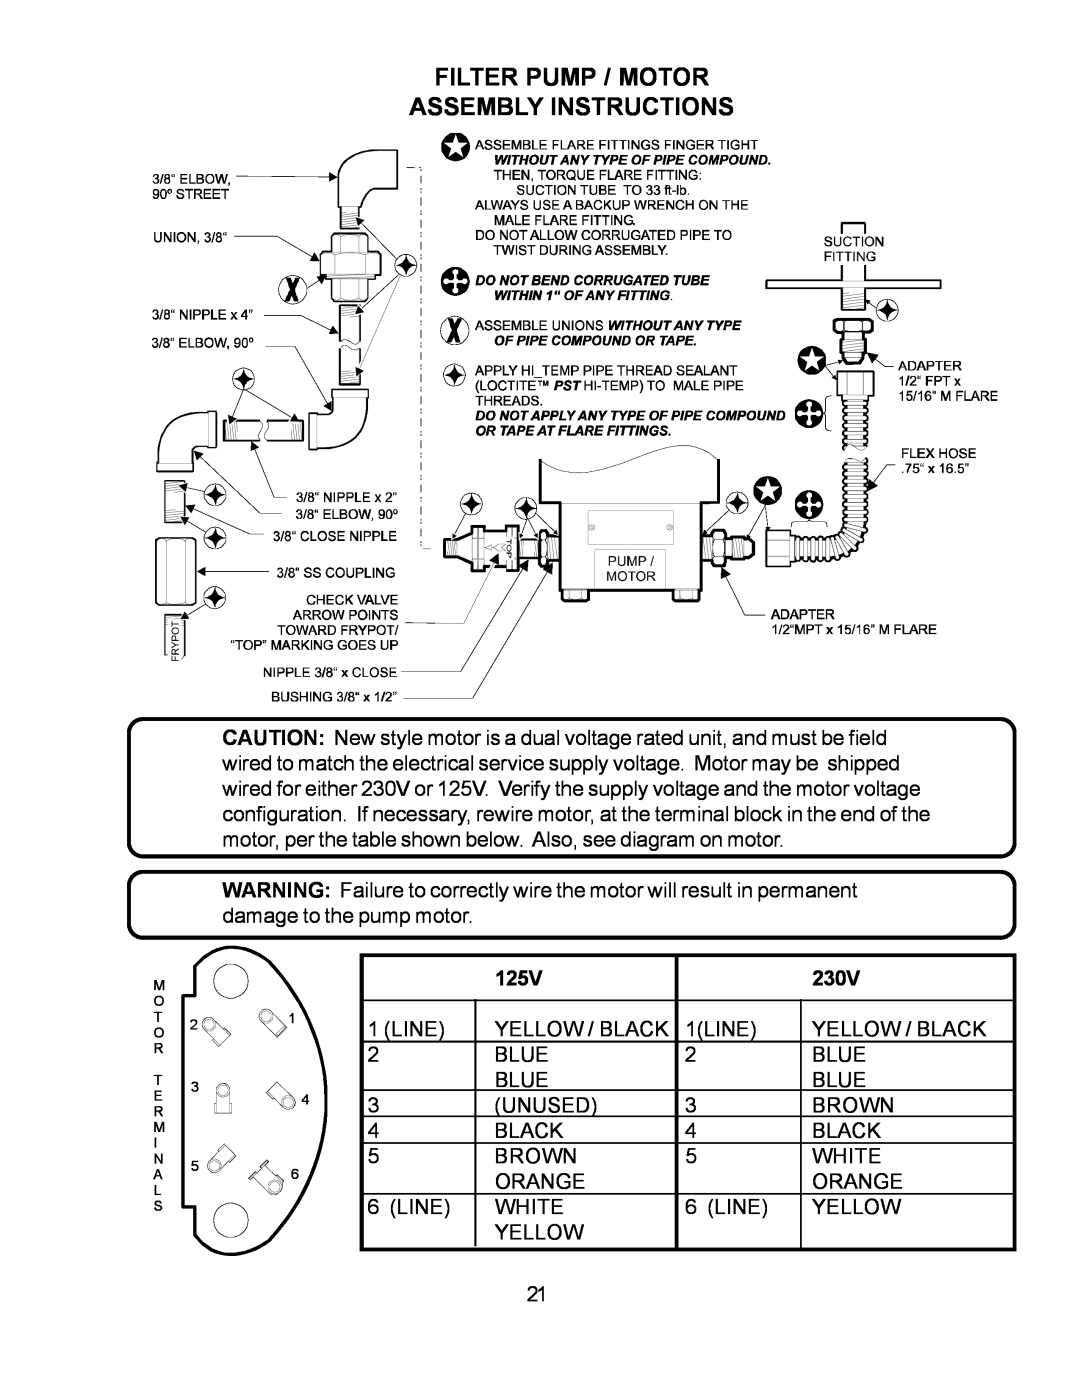 Wells WFGA-60FS service manual Filter Pump / Motor Assembly Instructions, M O T O R T E R M I N A L S 